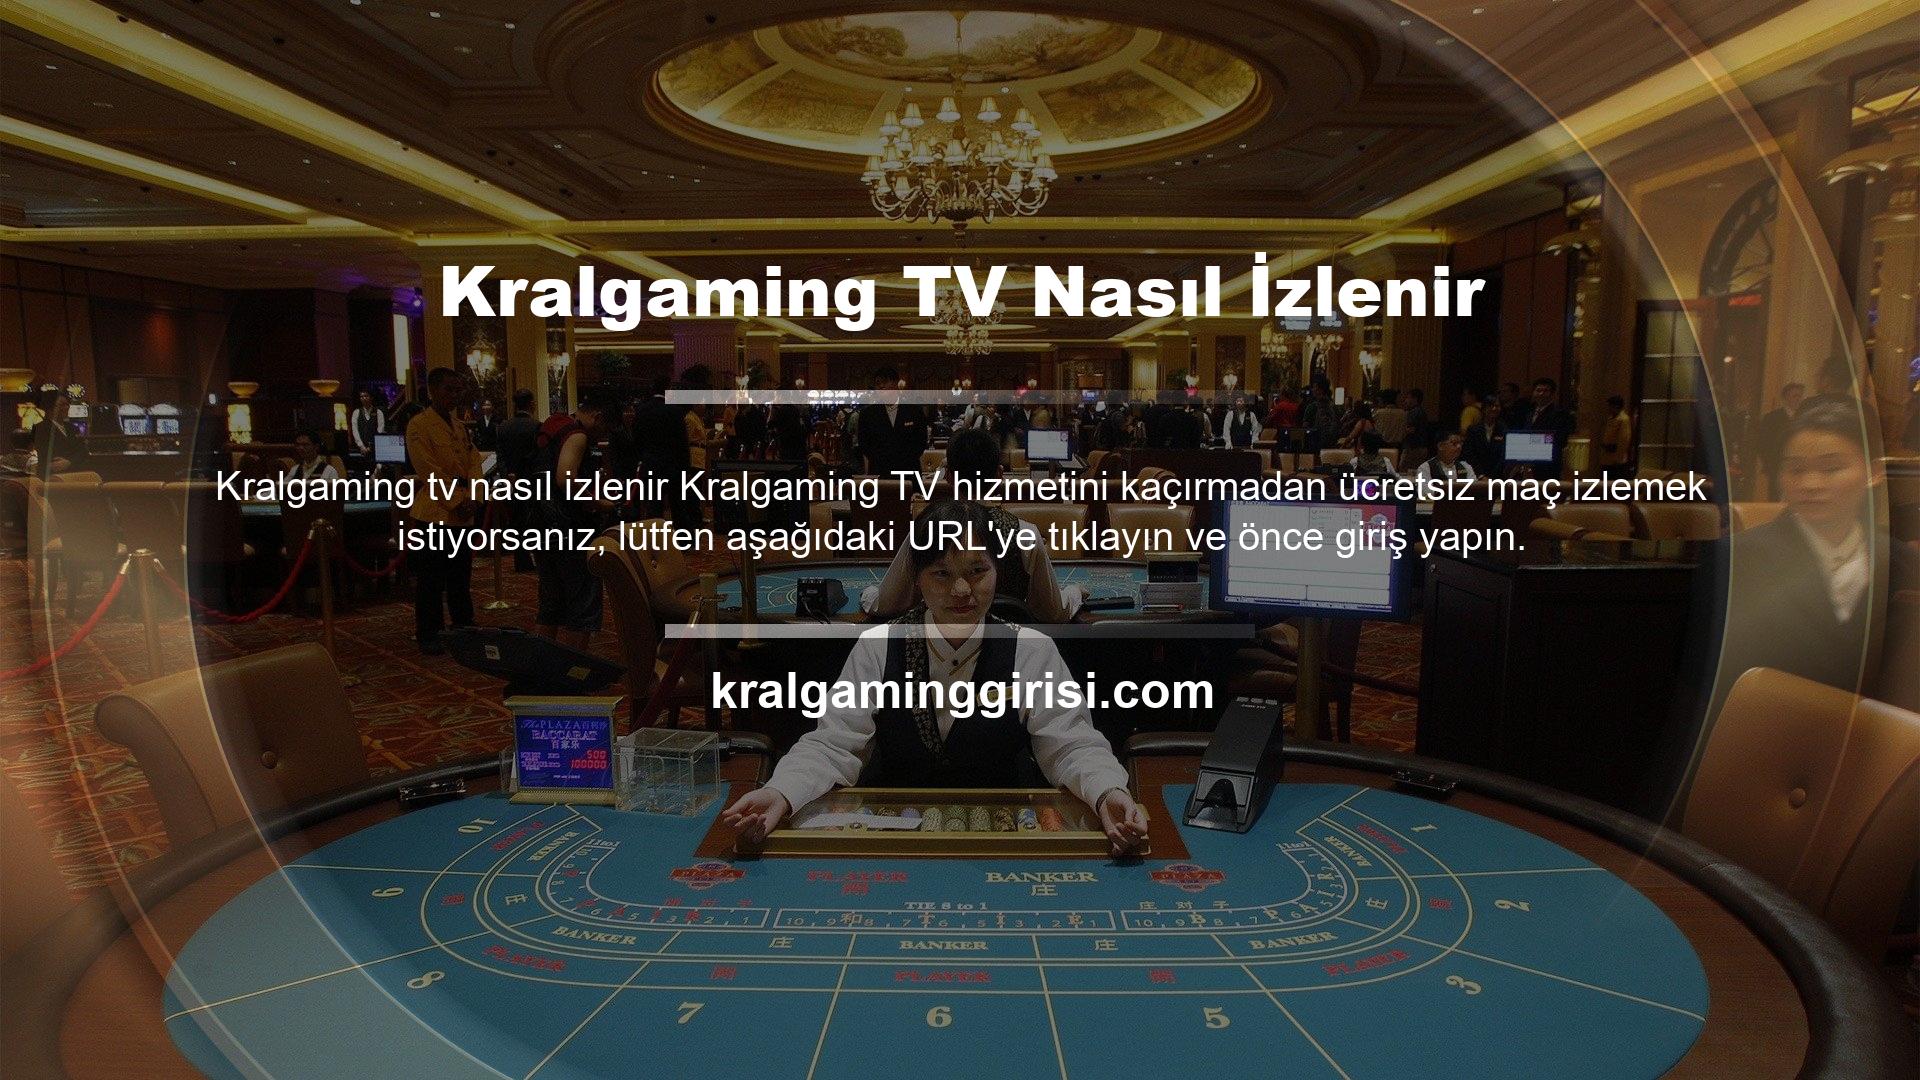 Canlı TV hizmeti logosu, web sitesinin sol alt köşesinde bulunur